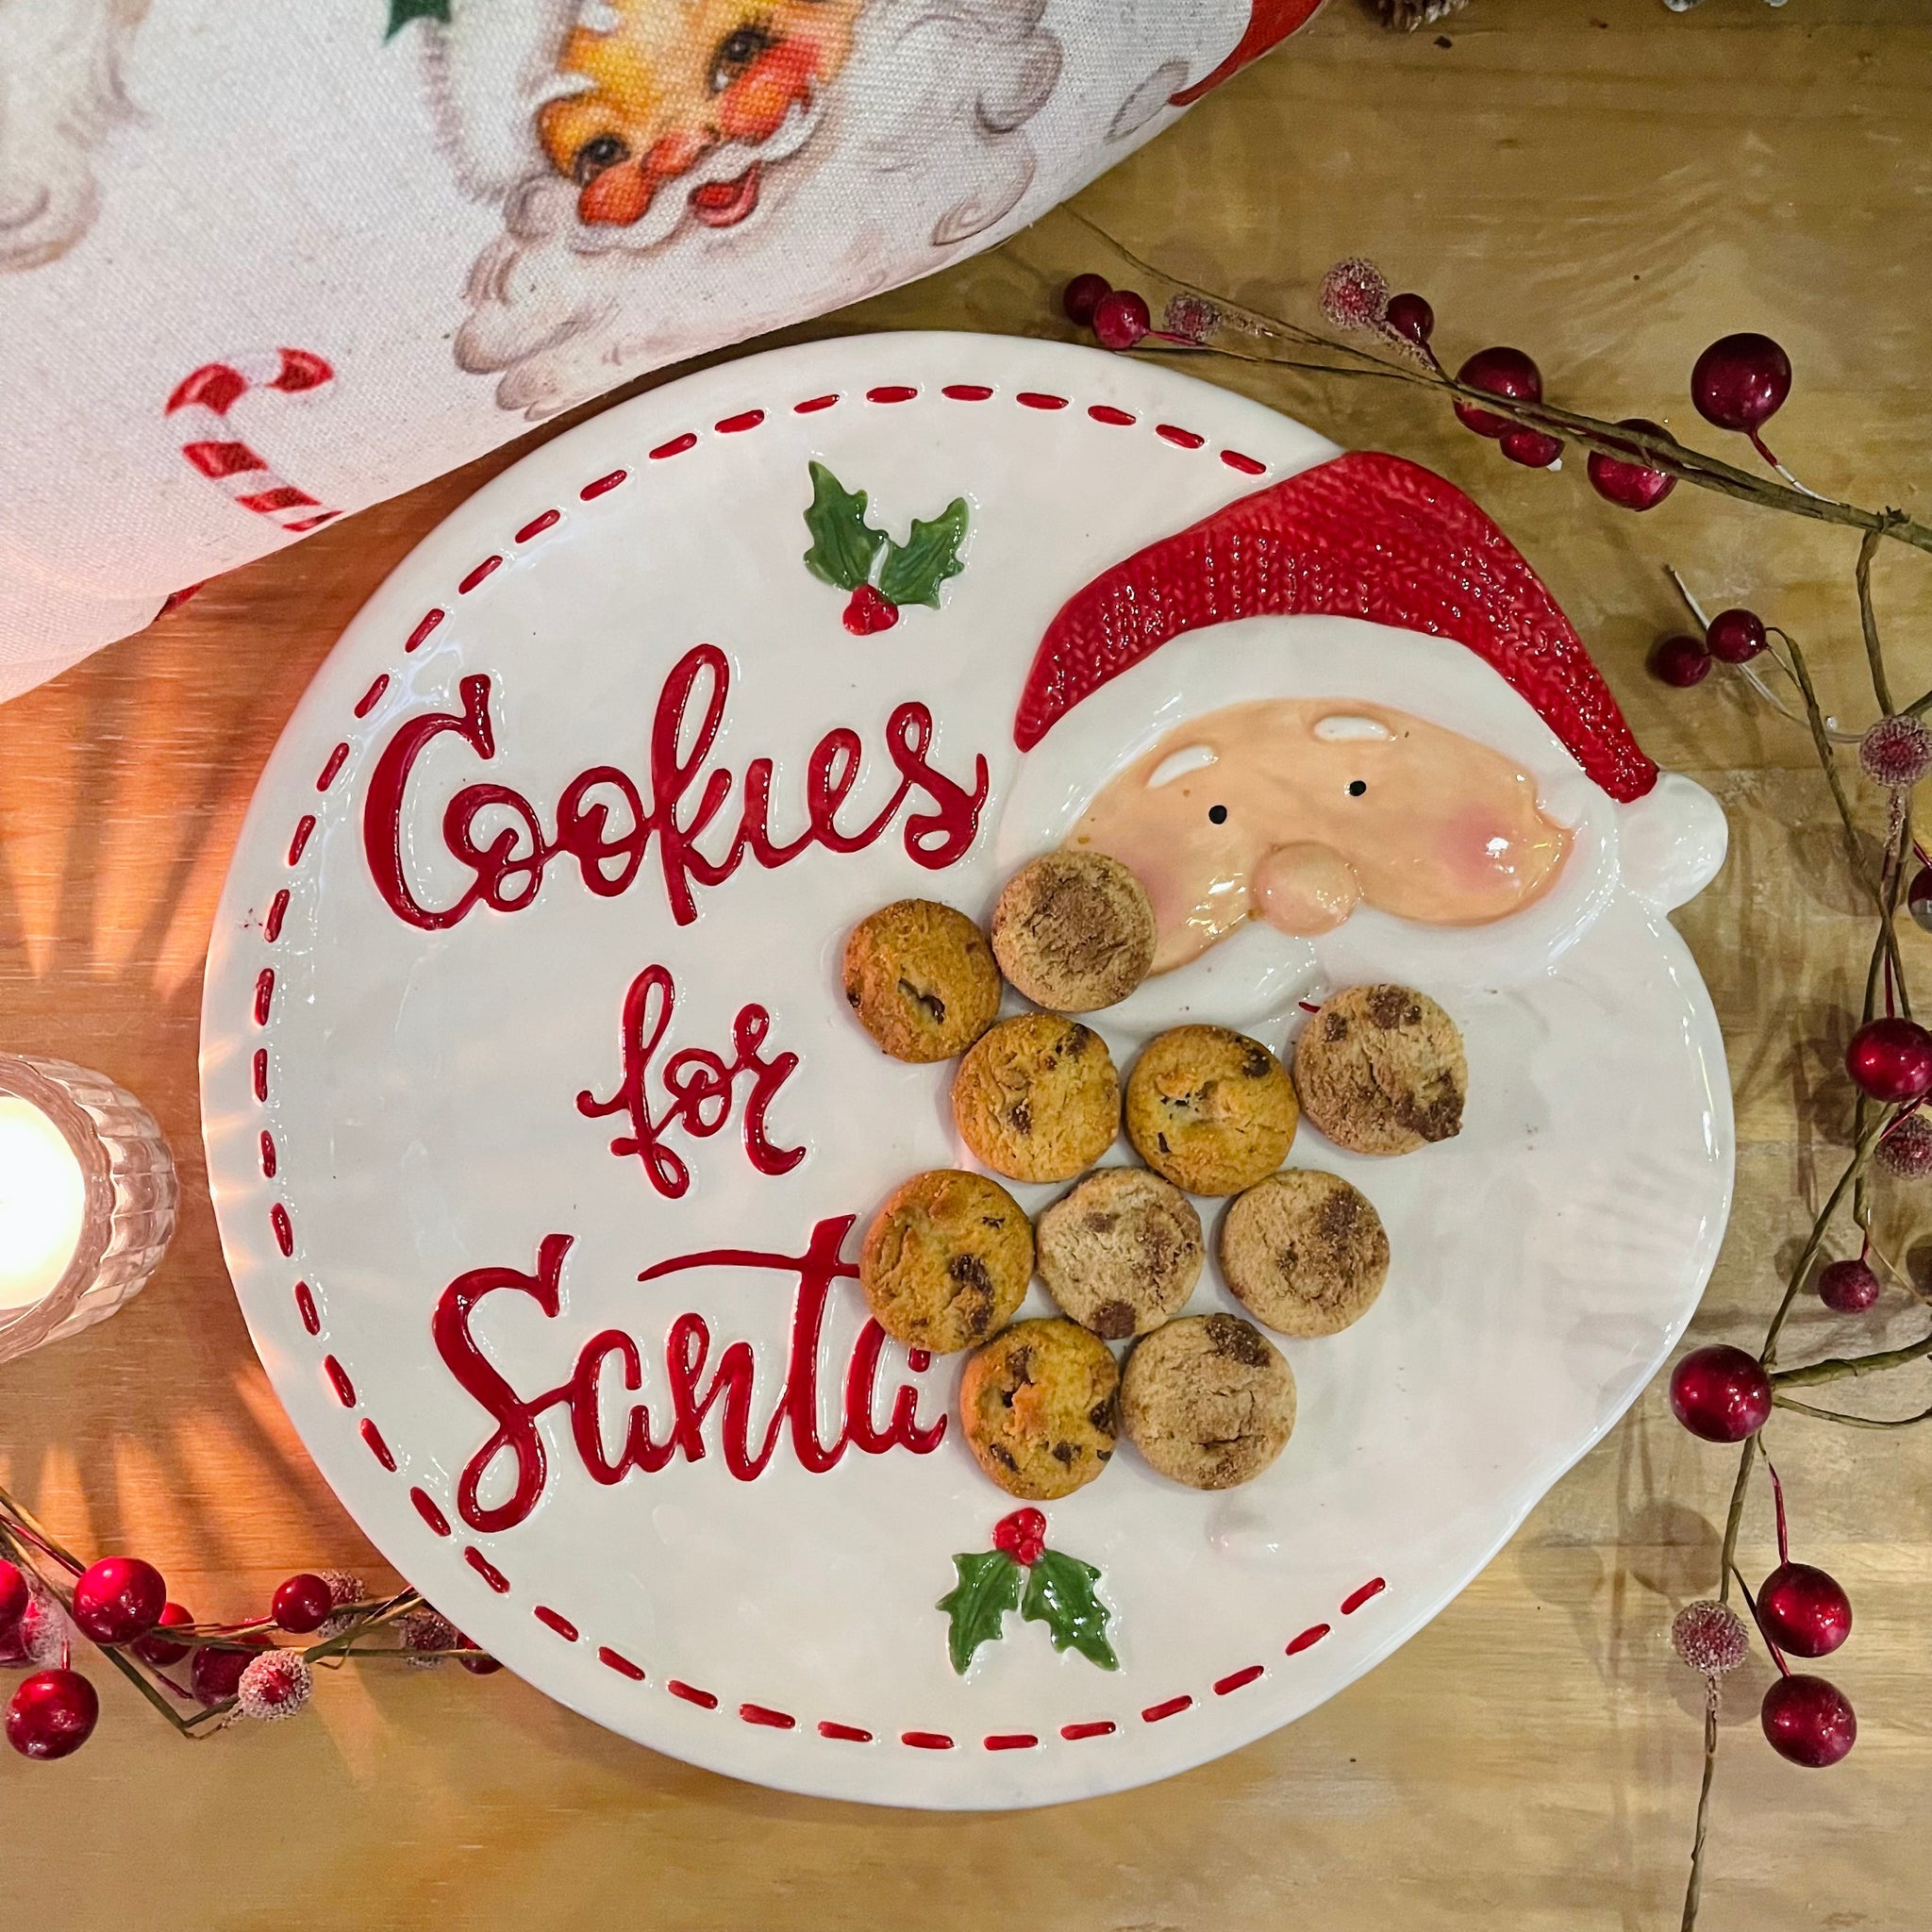 Ceramic Plate - Cookies for Santa